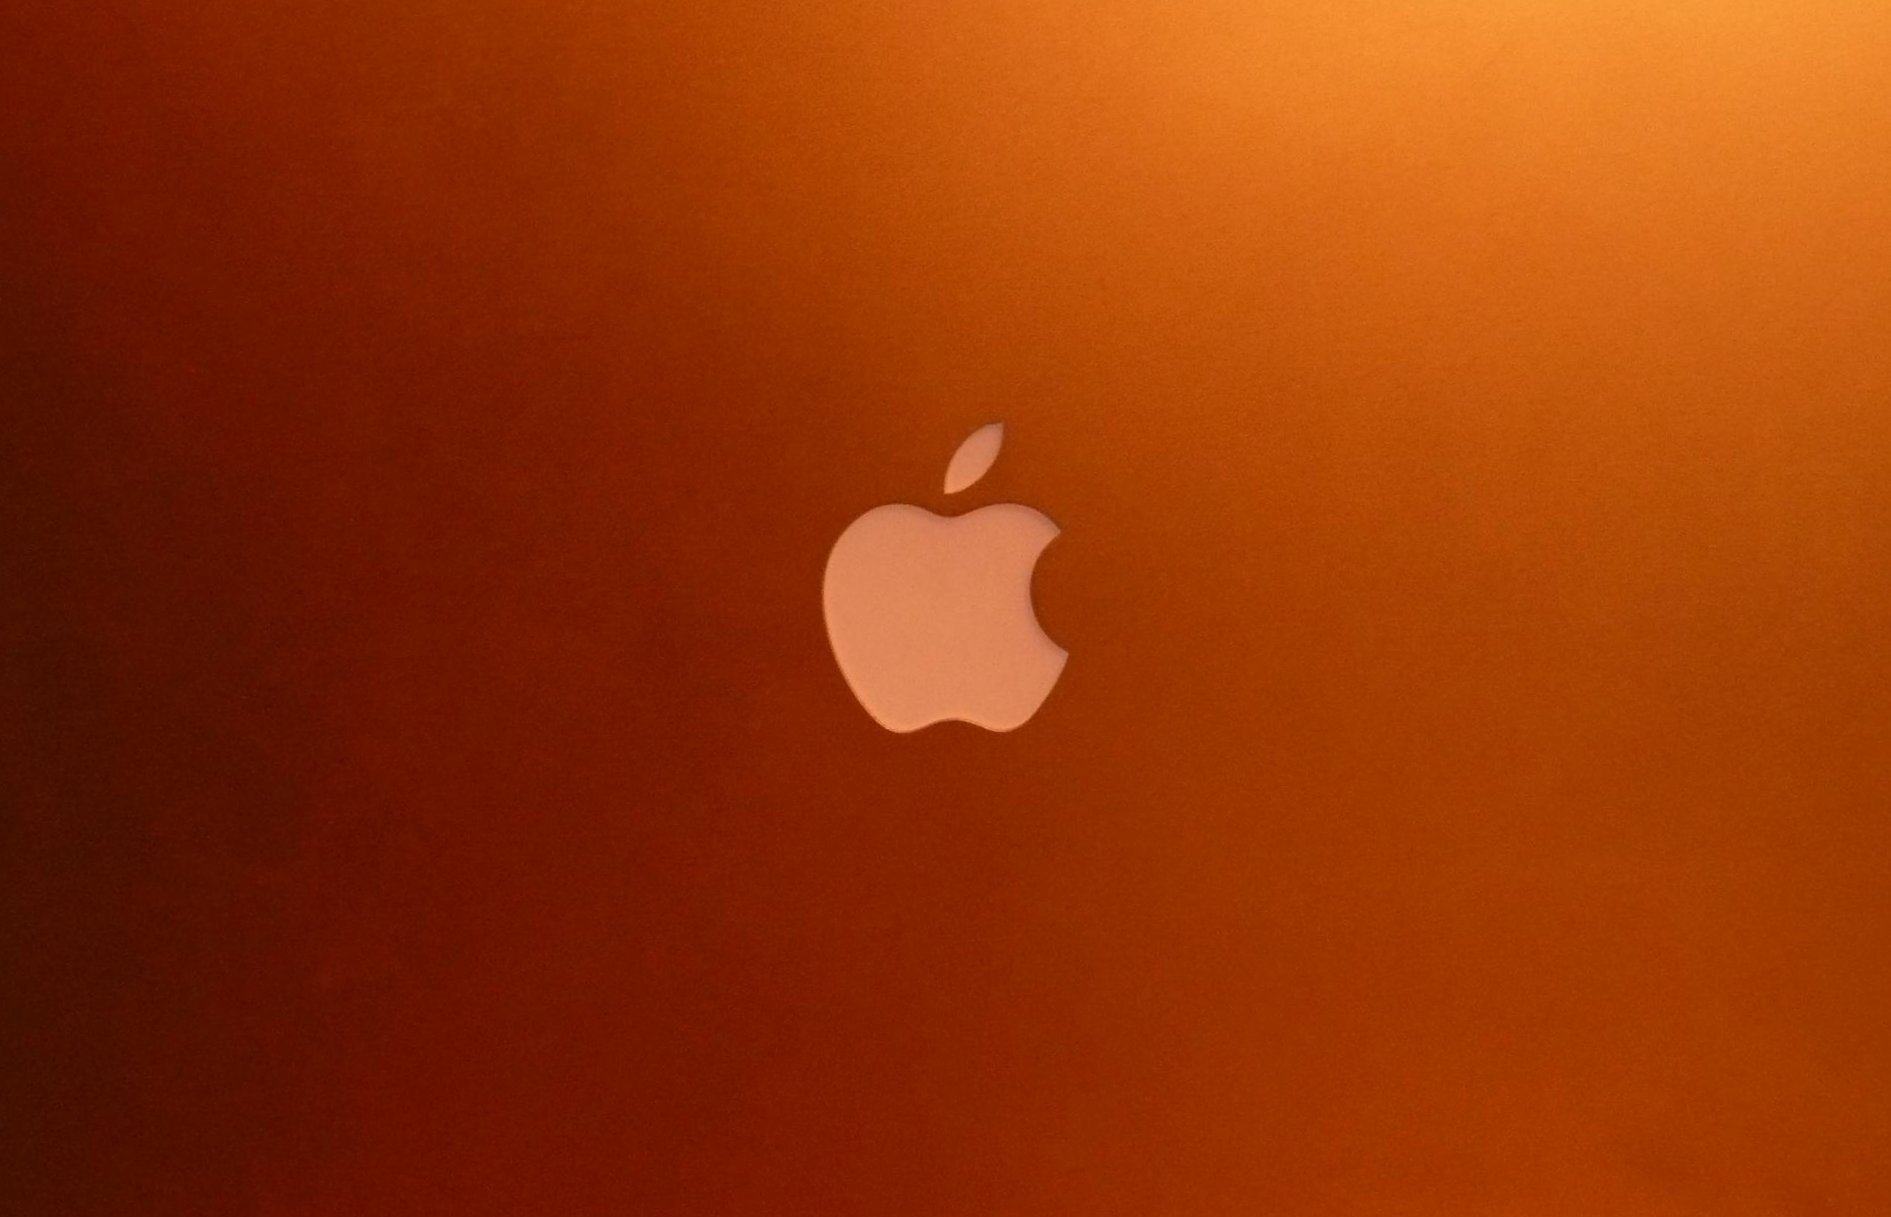 Macbook Air Wallpapers - Apple Wallpaper Macbook Air - HD Wallpaper 